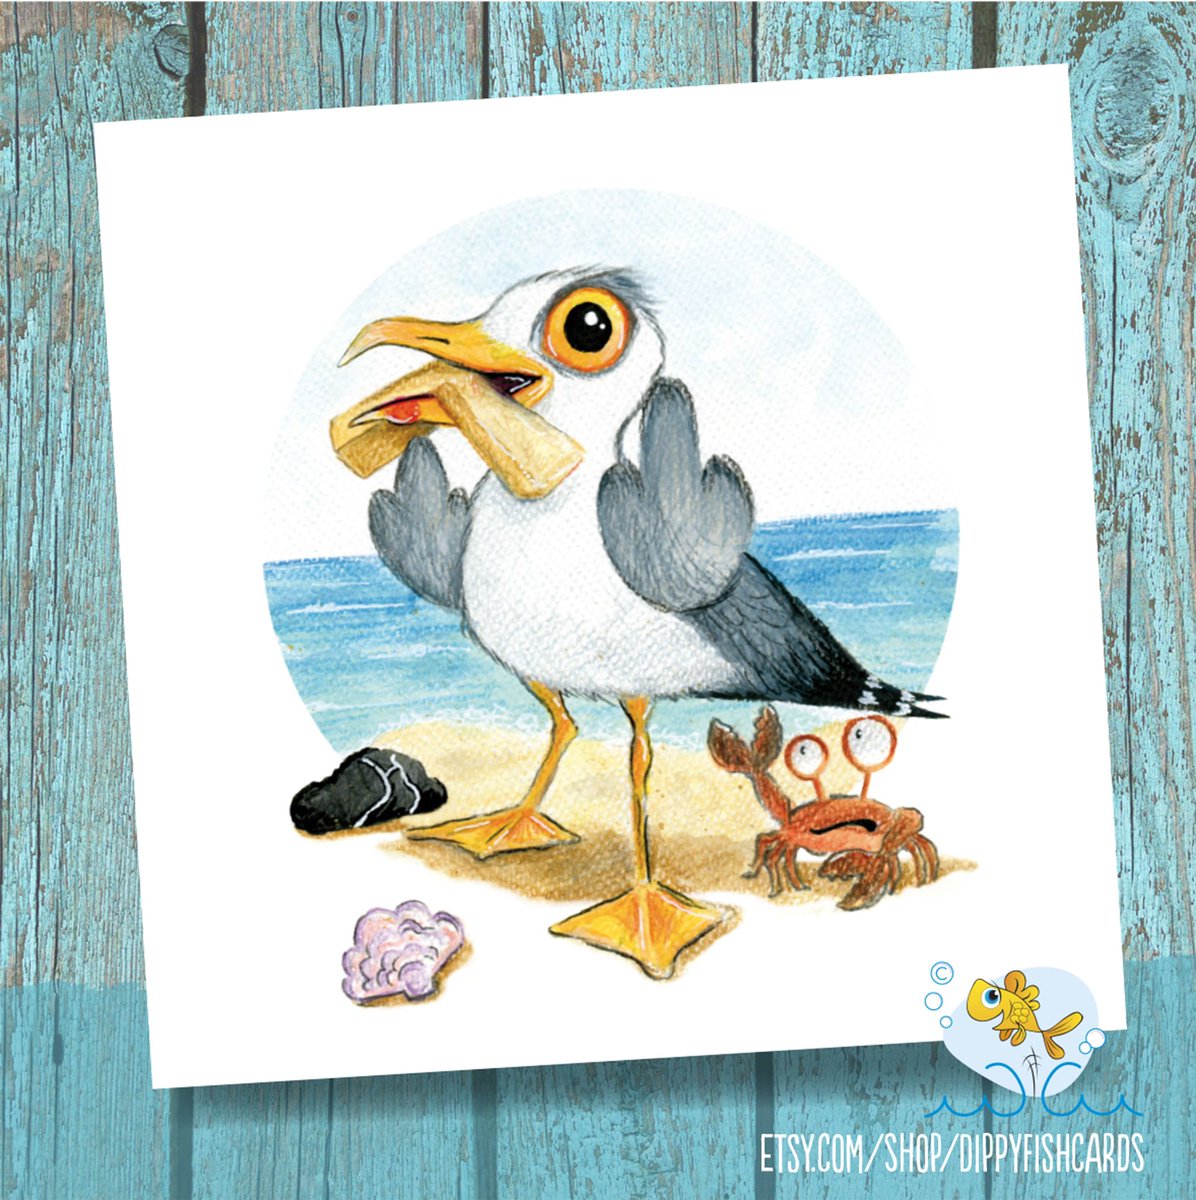 Happy #nationalfishandchipday #seagull #chipthief